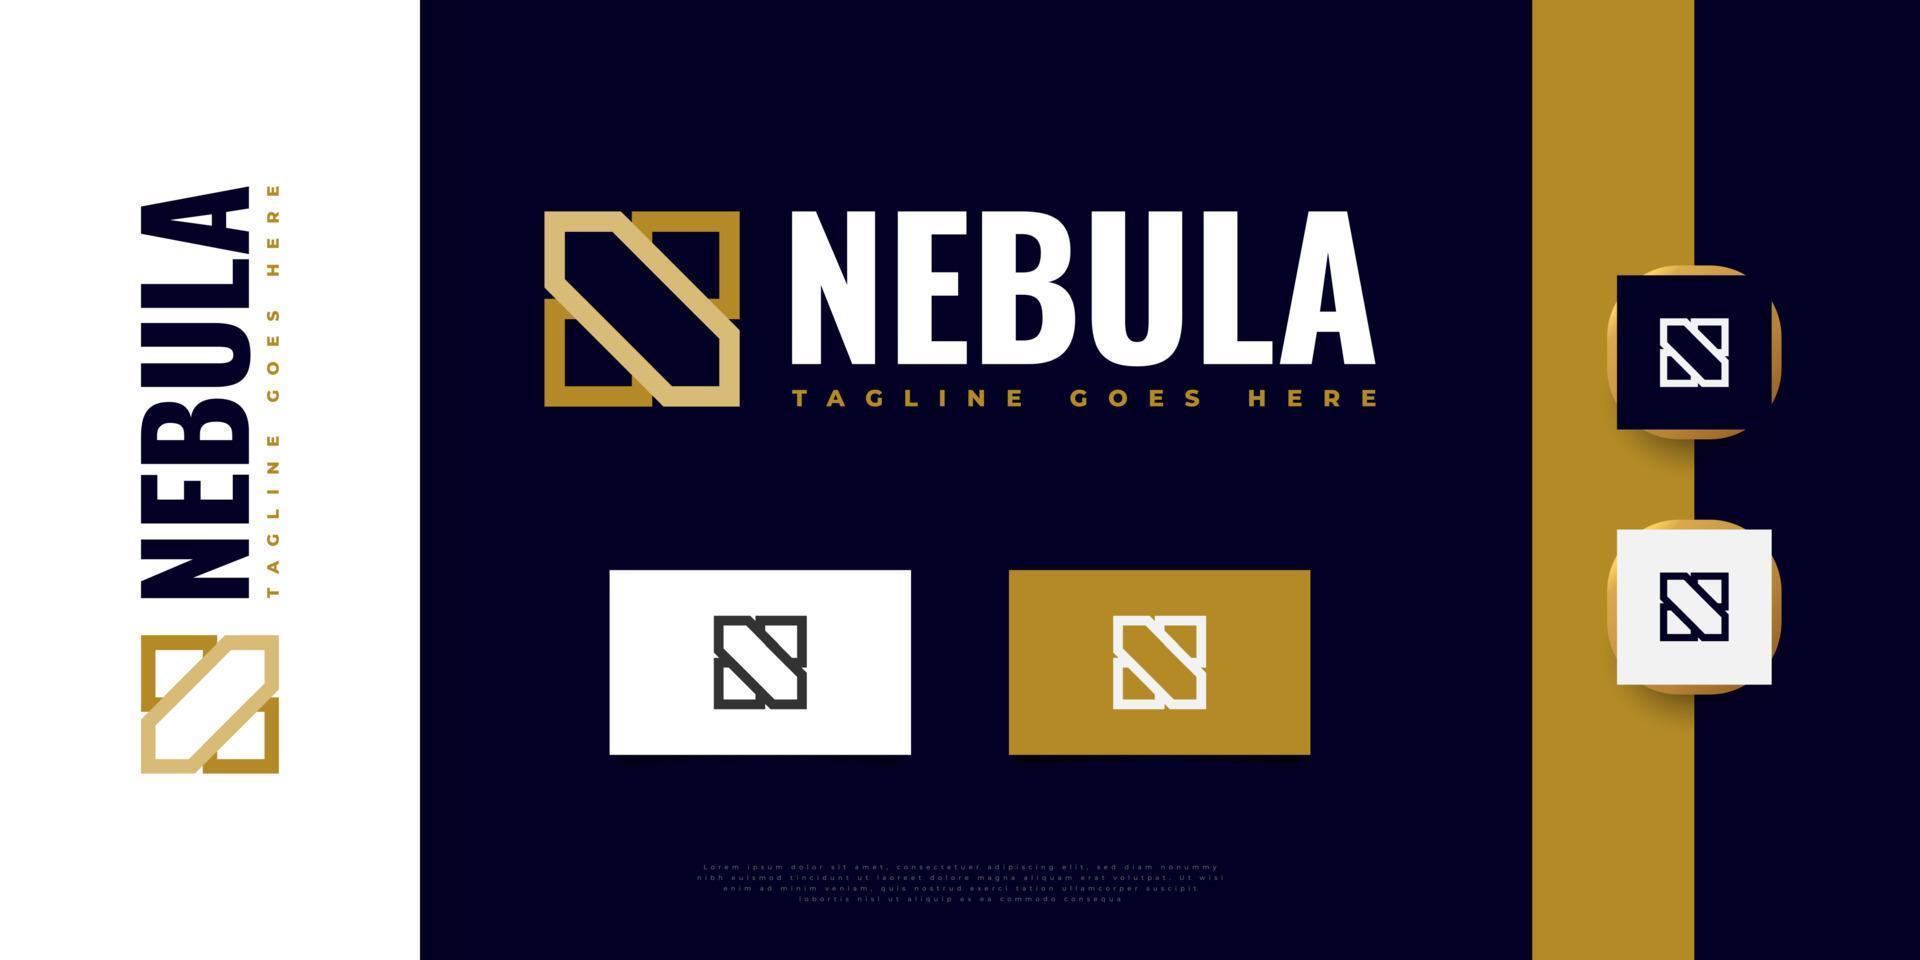 Abstract and Elegant Letter N Logo Design. Golden N Logo or Symbol vector